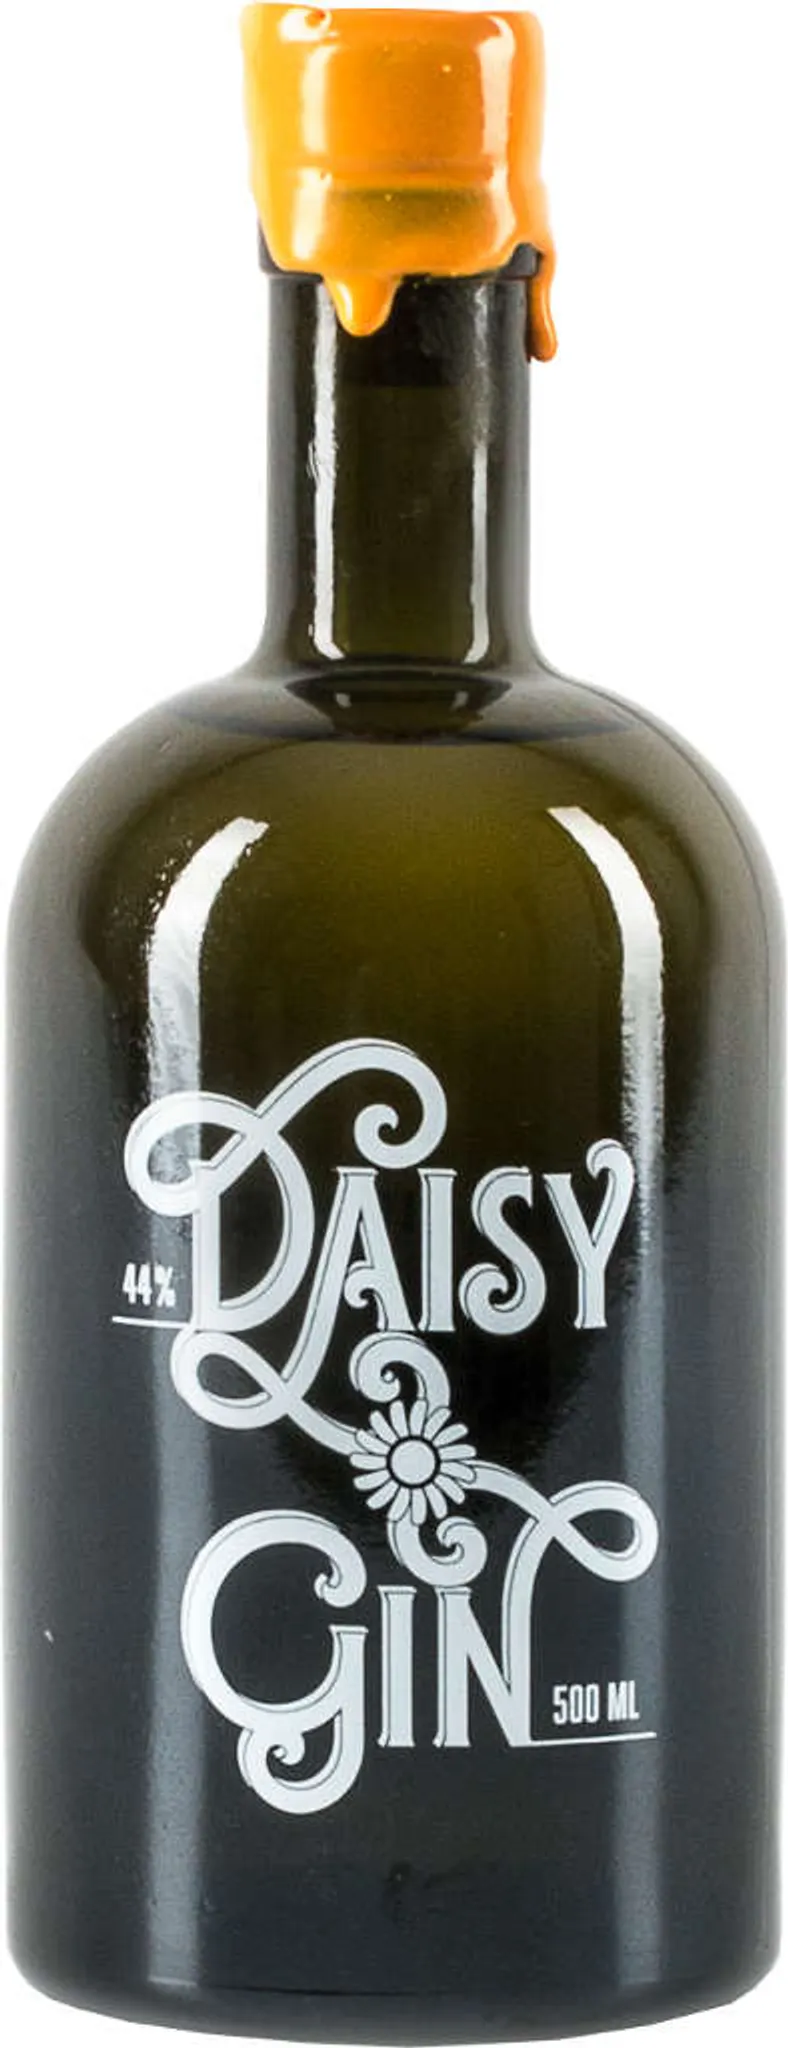 Daisy Gin - Organic London Dry Gin 44 % Gin | Gin